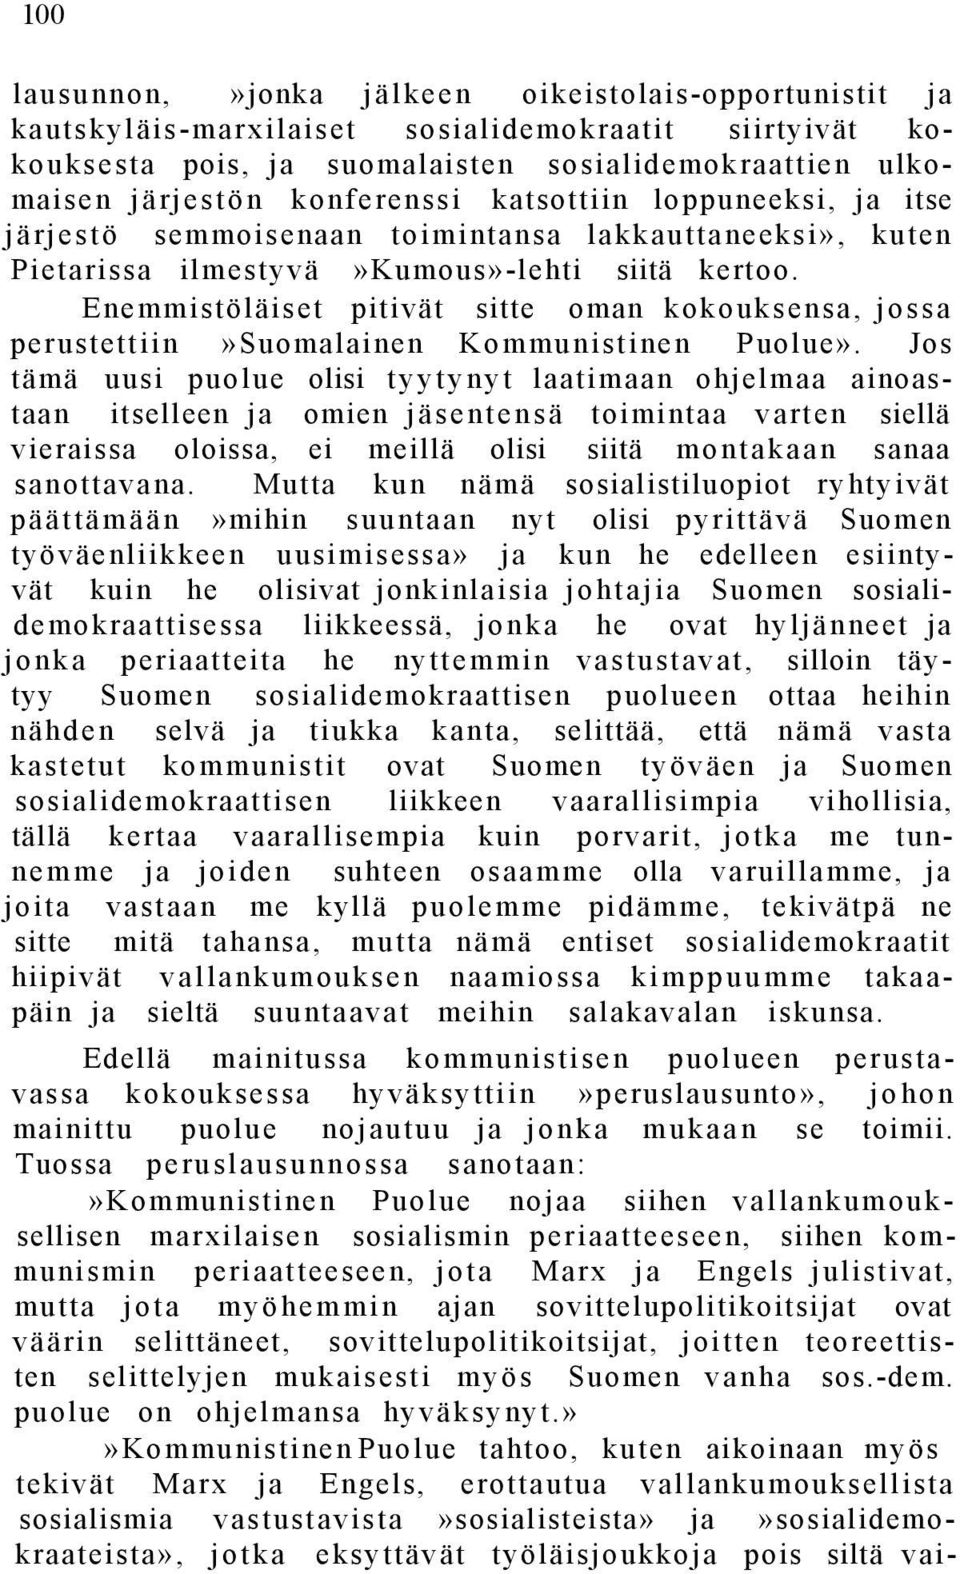 Enemmistöläiset pitivät sitte oman kokouksensa, jossa perustettiin»suomalainen Kommunistinen Puolue».